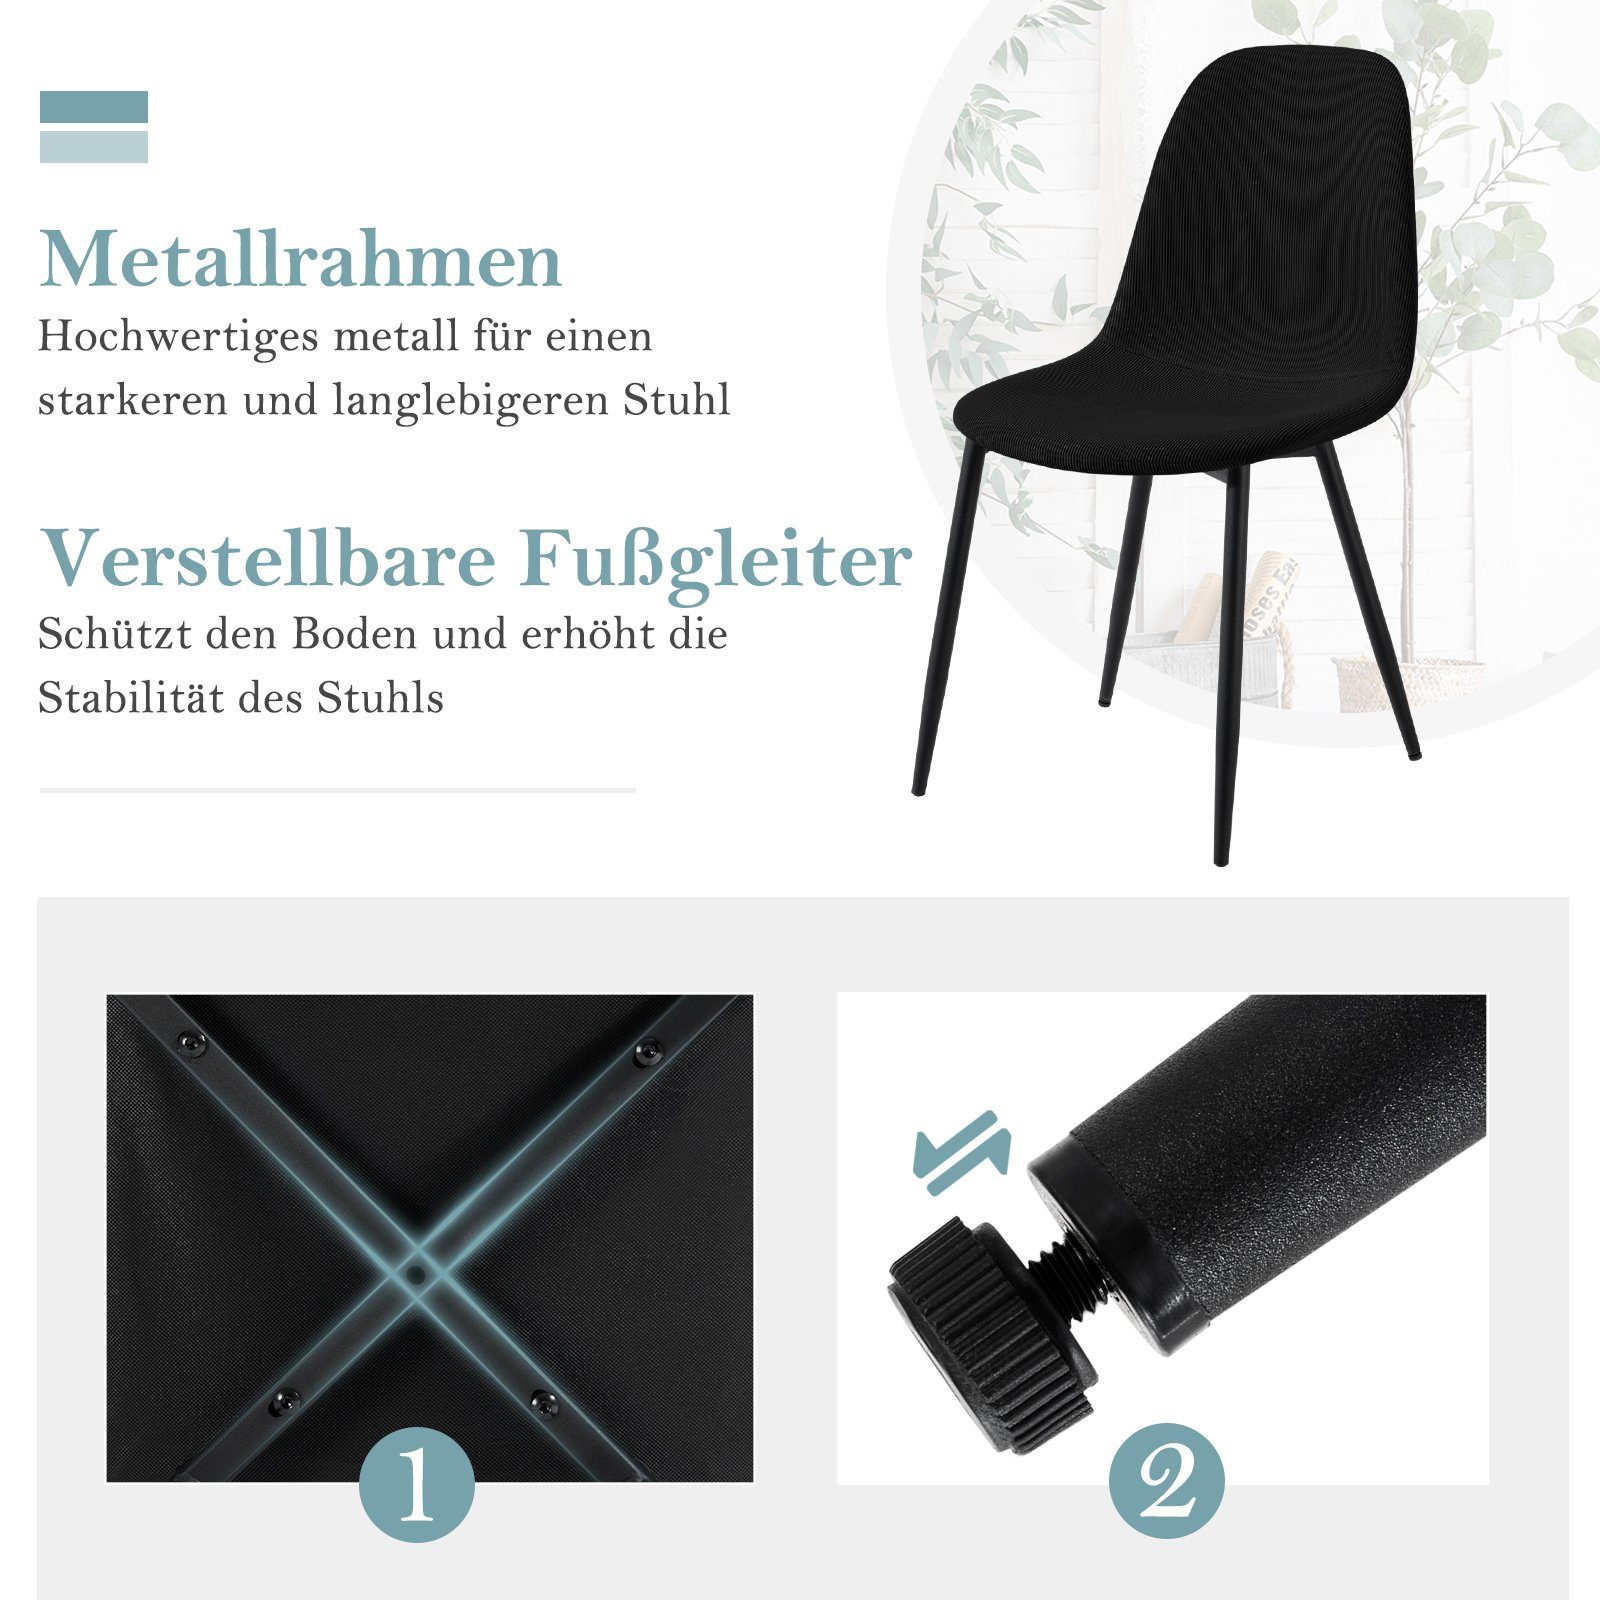 EUGAD aus Esszimmerstühle Schwarz St), modern, Cord Küchenstuhl (4 Skandinavisch Metallbeine,